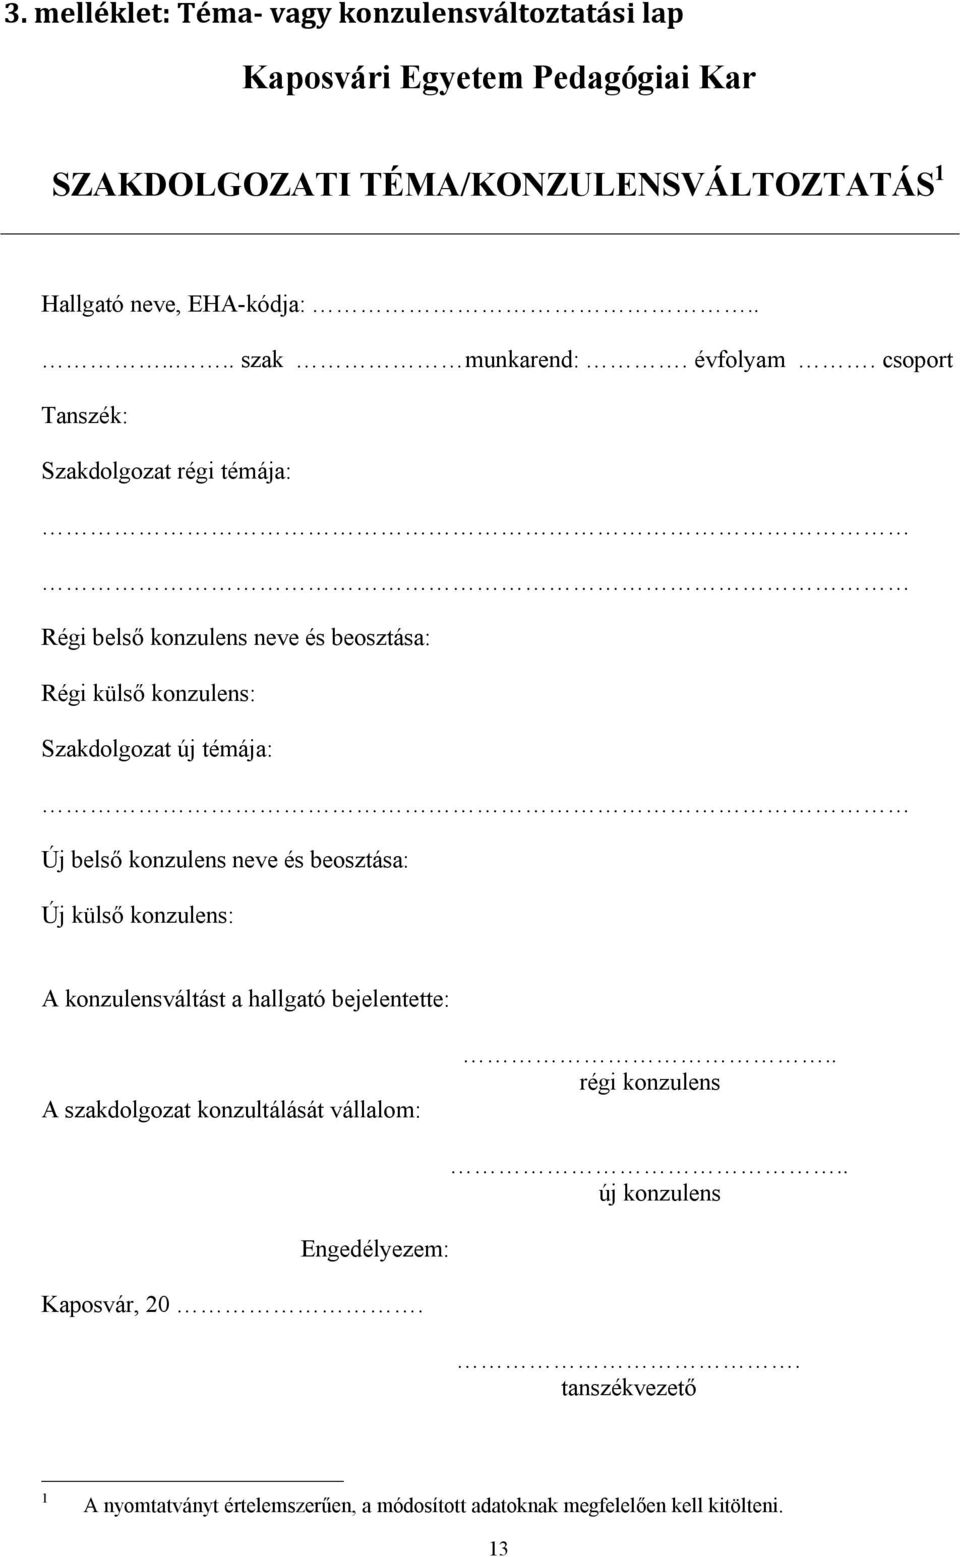 Kaposvári Egyetem Pedagógiai Kar. Szakdolgozati szabályzat - PDF Free  Download